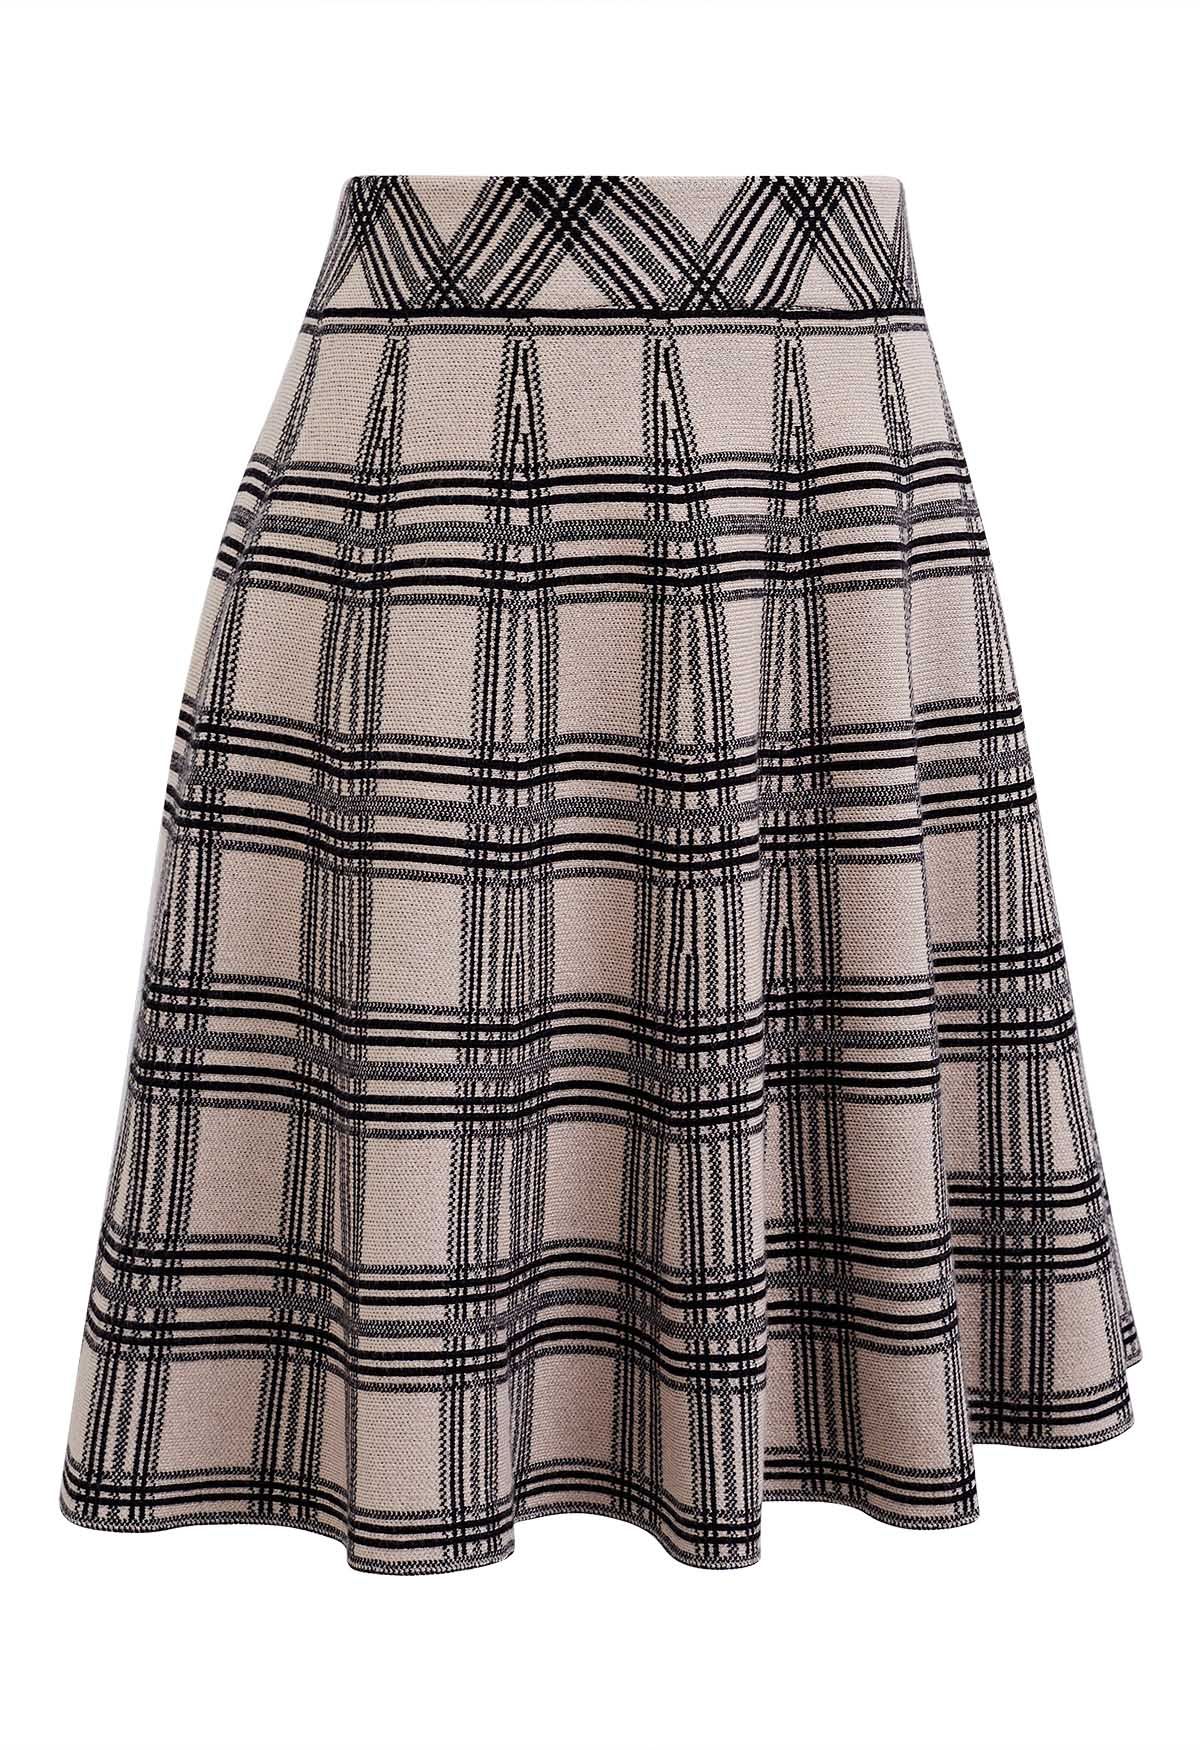 Plaid Knit High Waist Mini Skirt in Light Tan